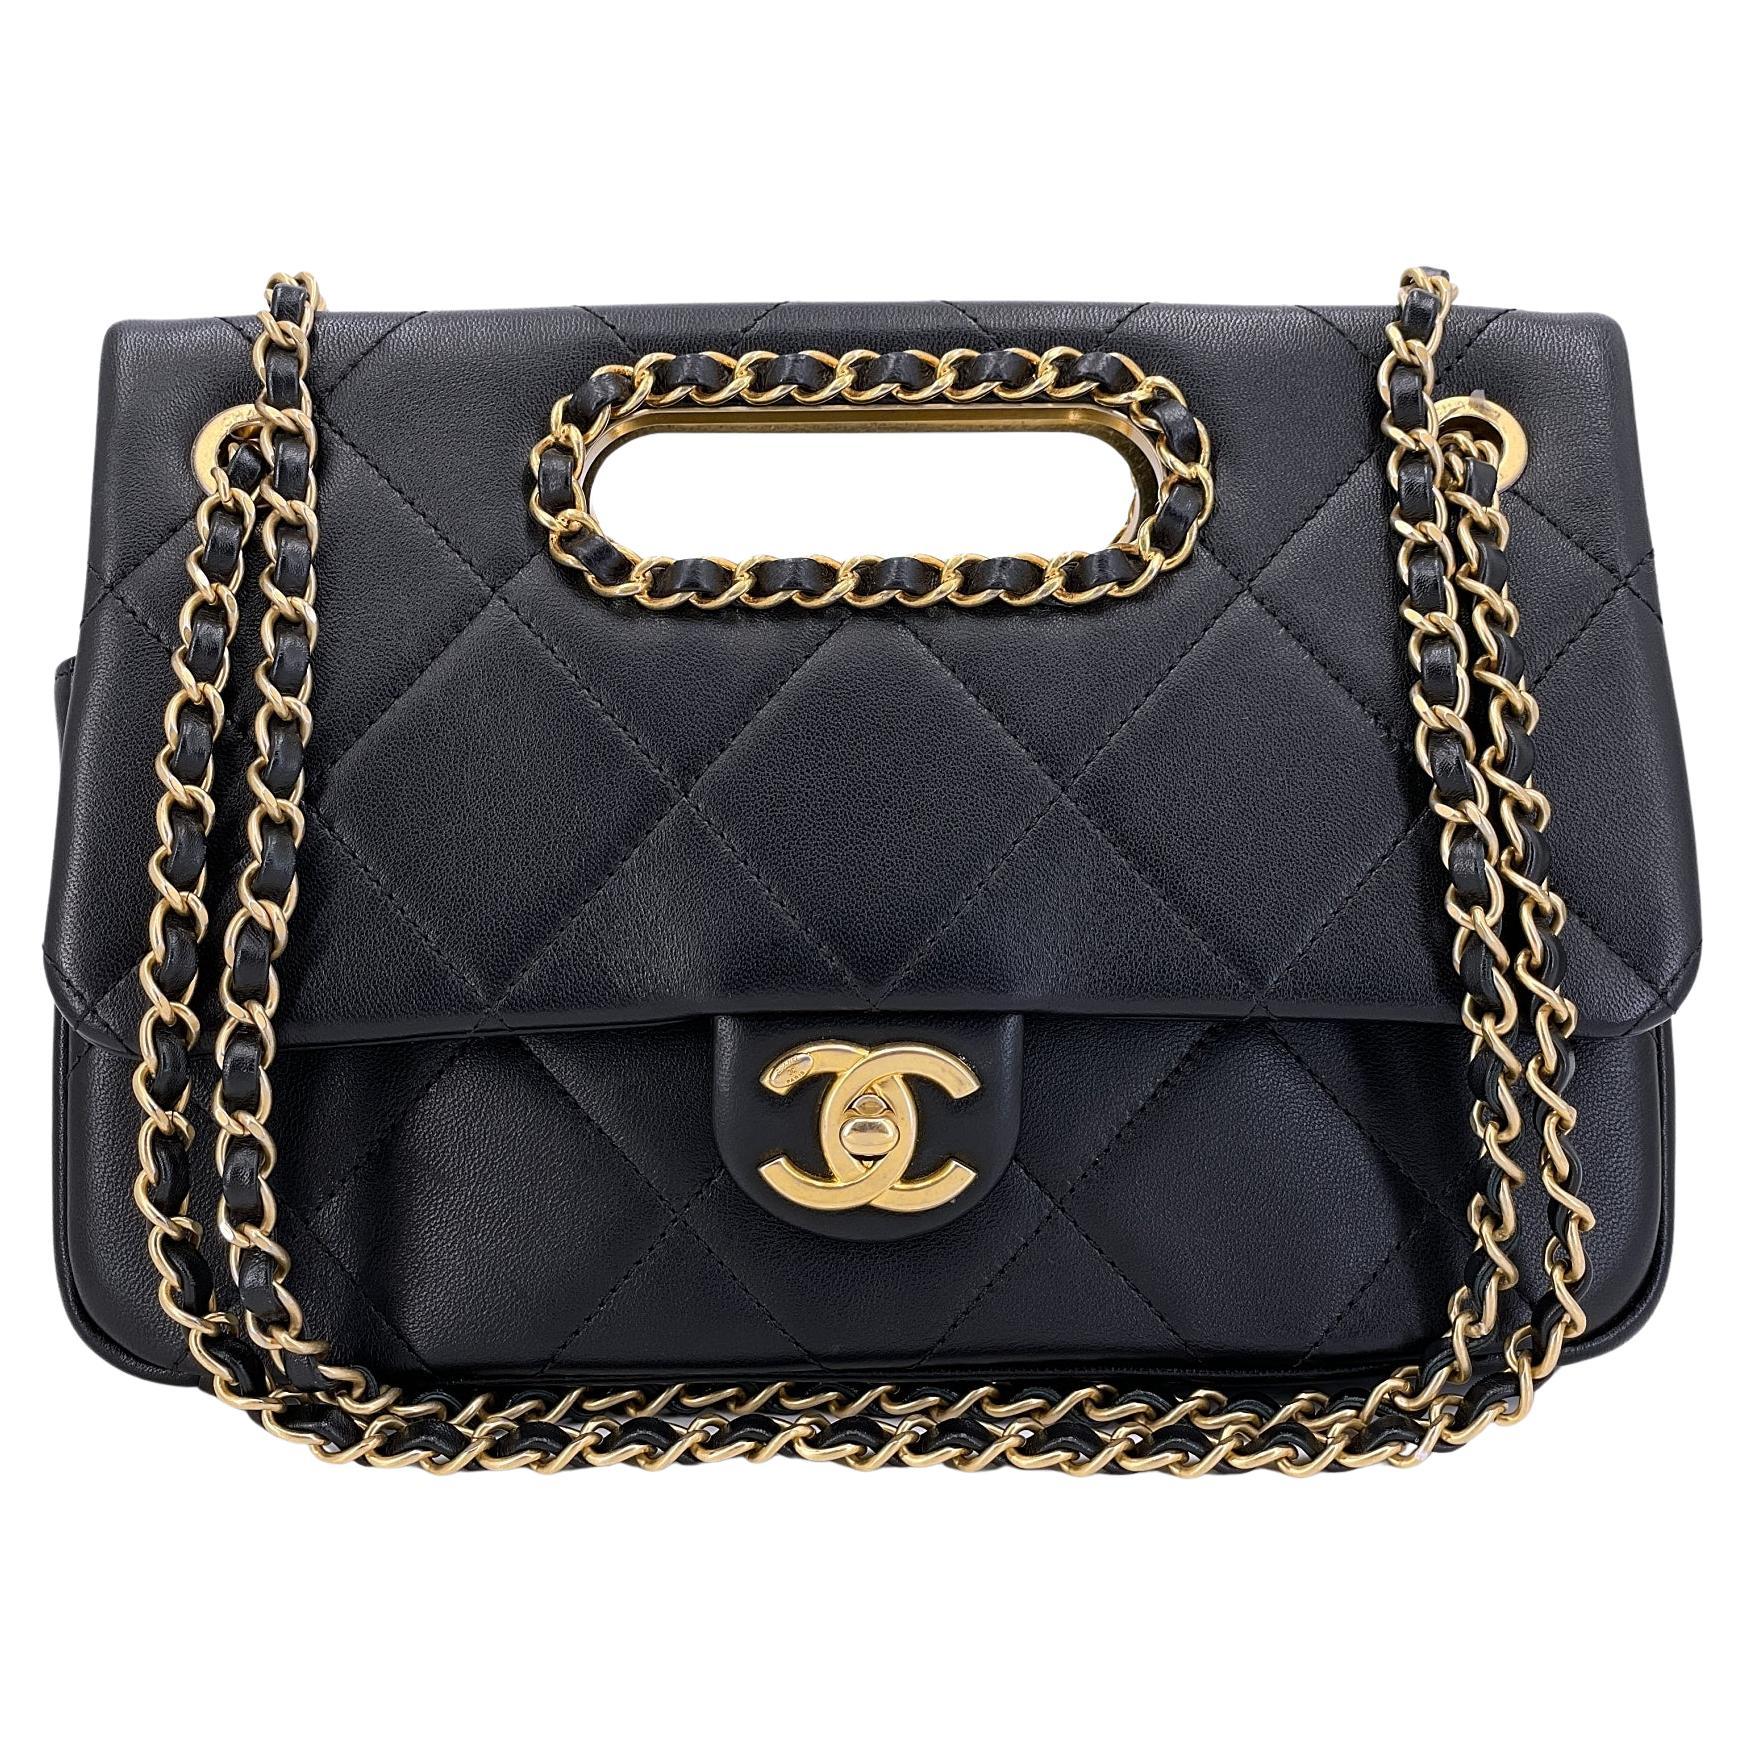 Chanel, sac à main noir avec anse en chaîne et rabat, GHW  68023 en vente